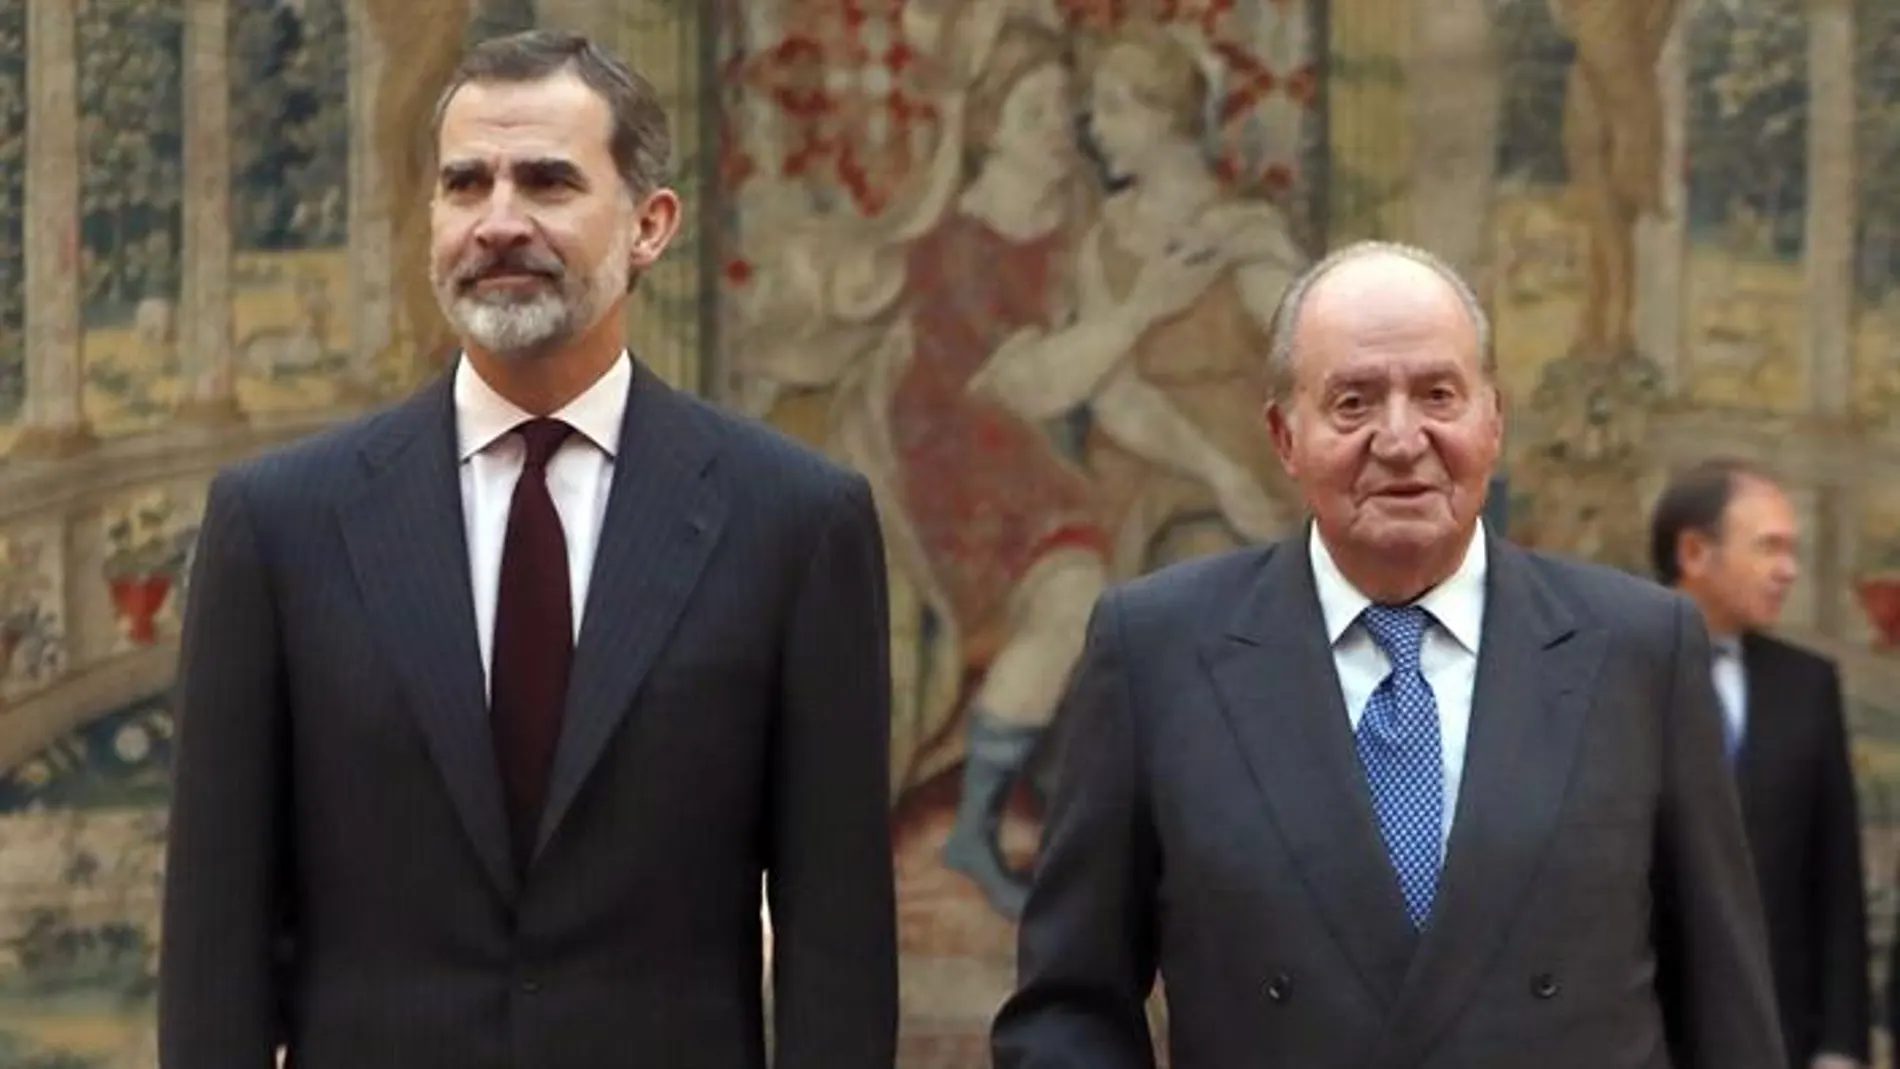 Imagen de archivo del rey Felipe VI con don Juan Carlos en un acto de la Constitución